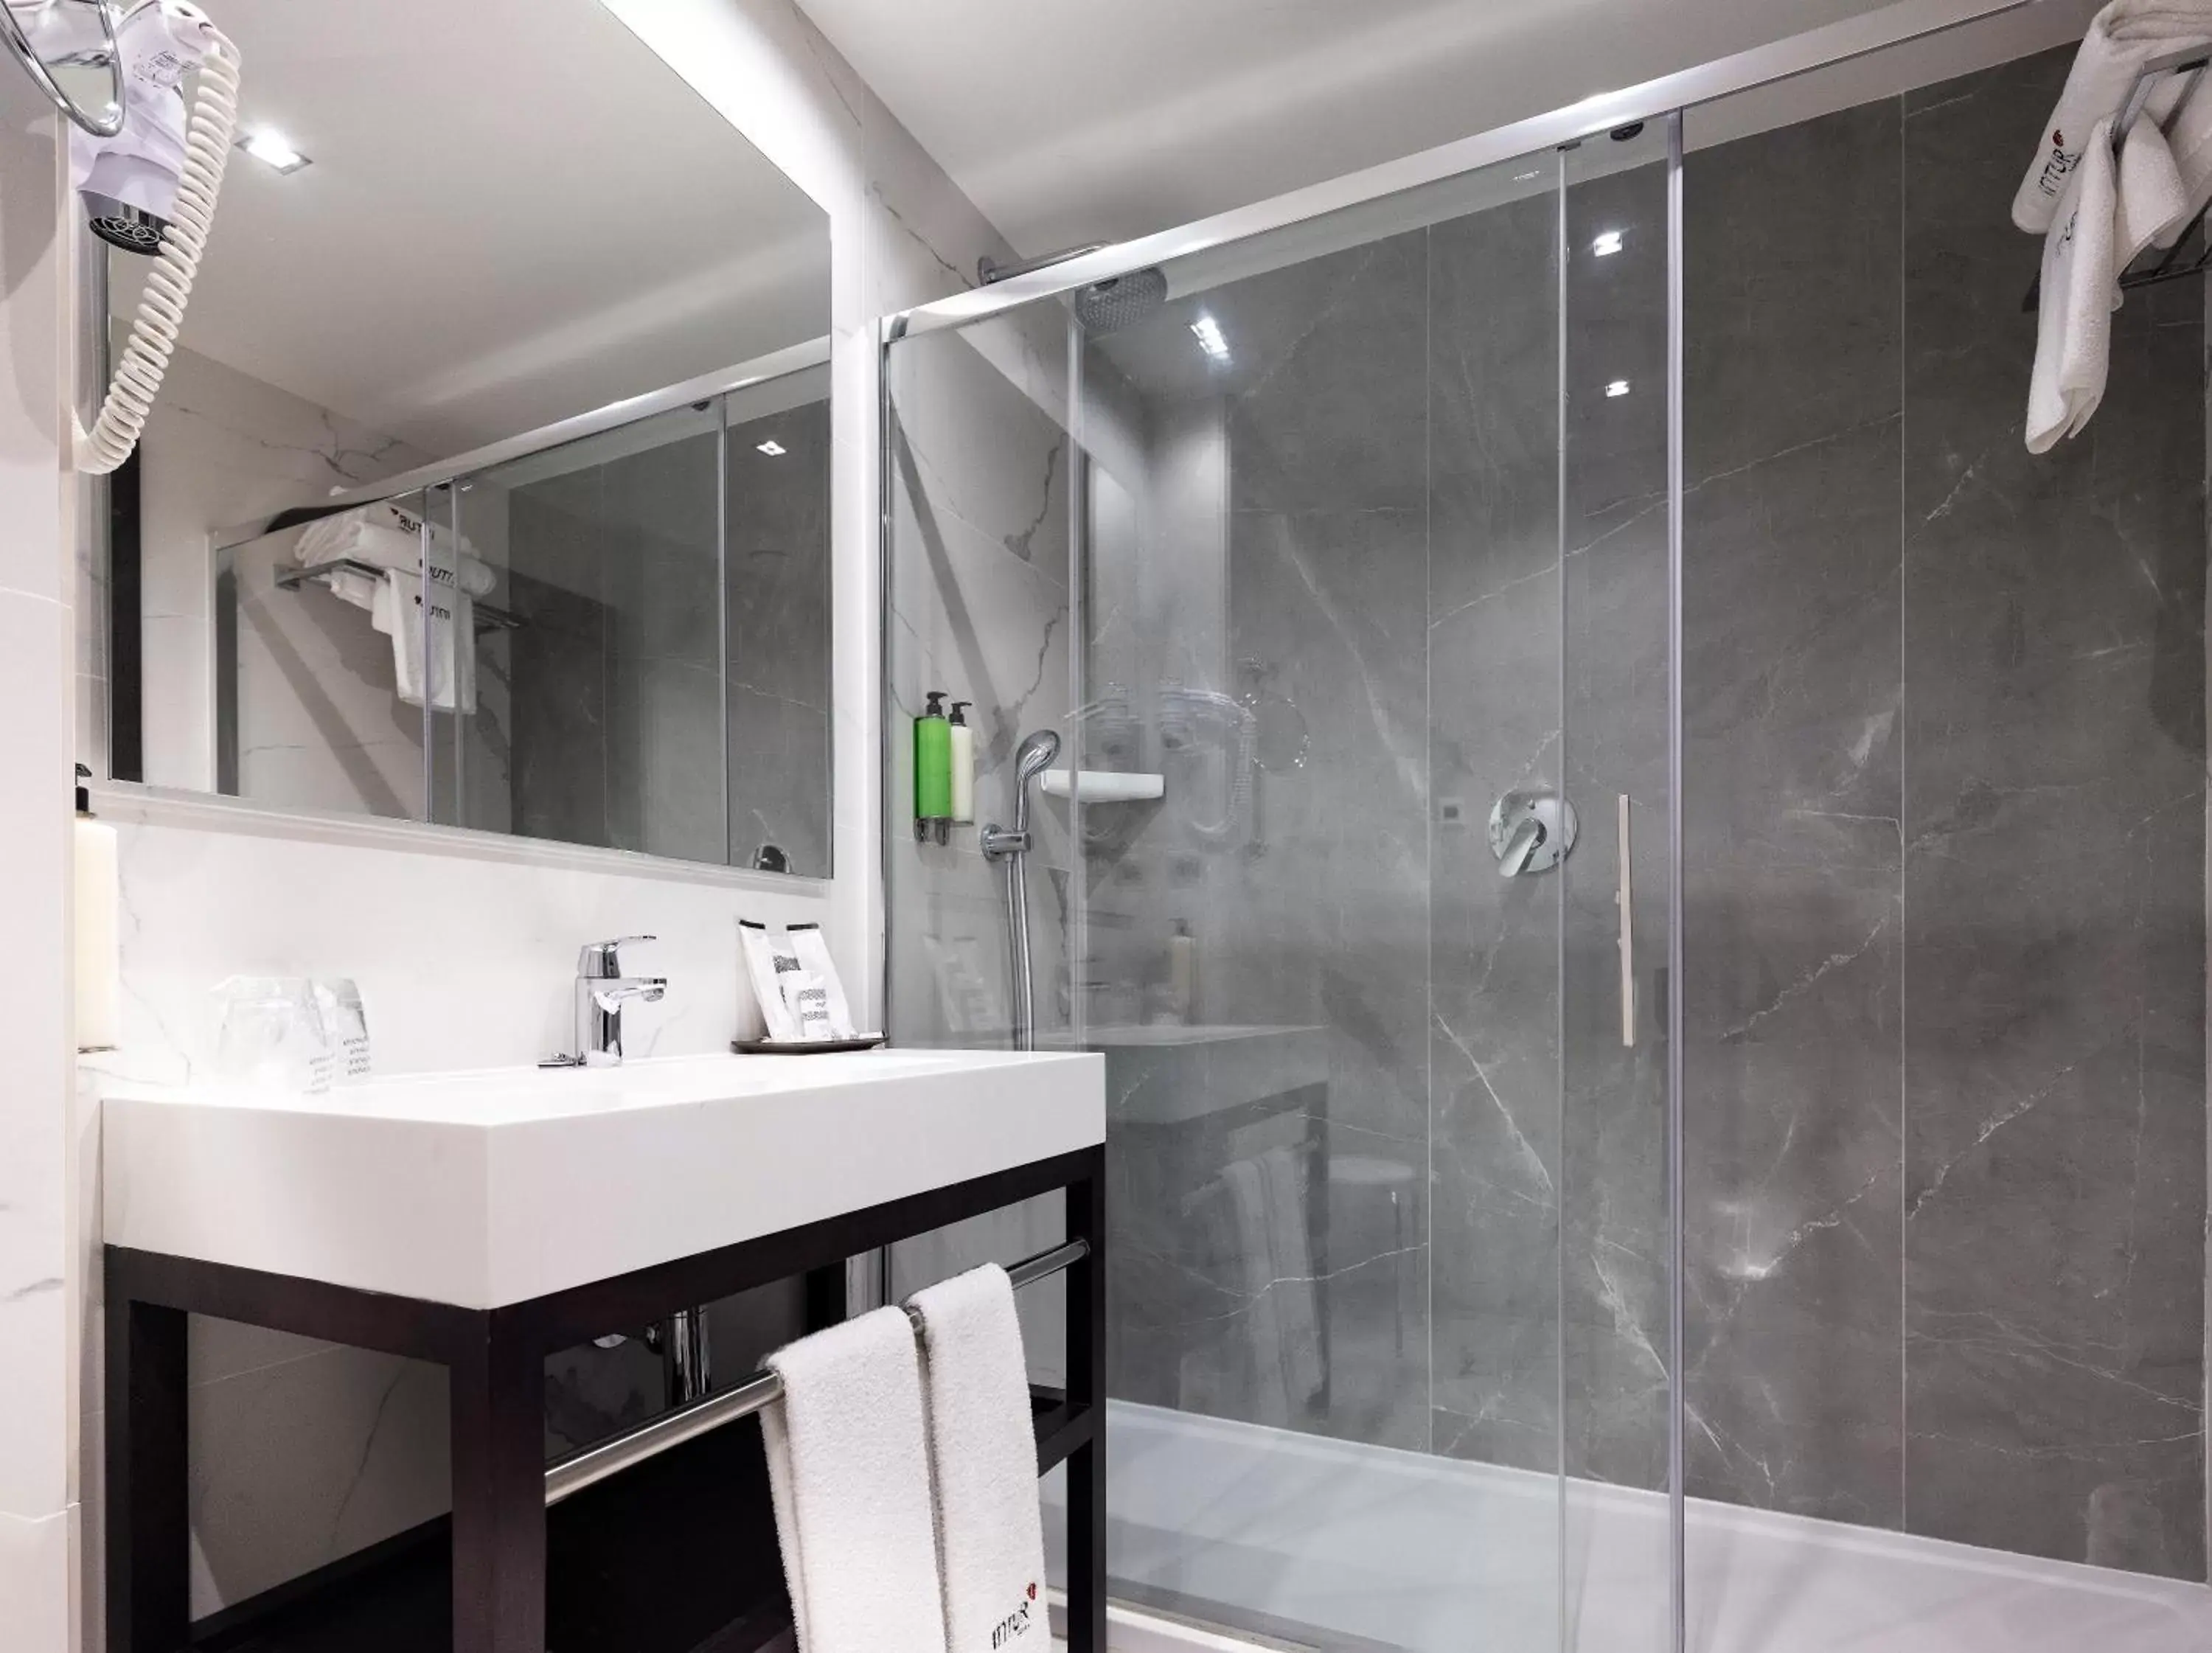 Shower, Bathroom in Intur Palacio San Martin